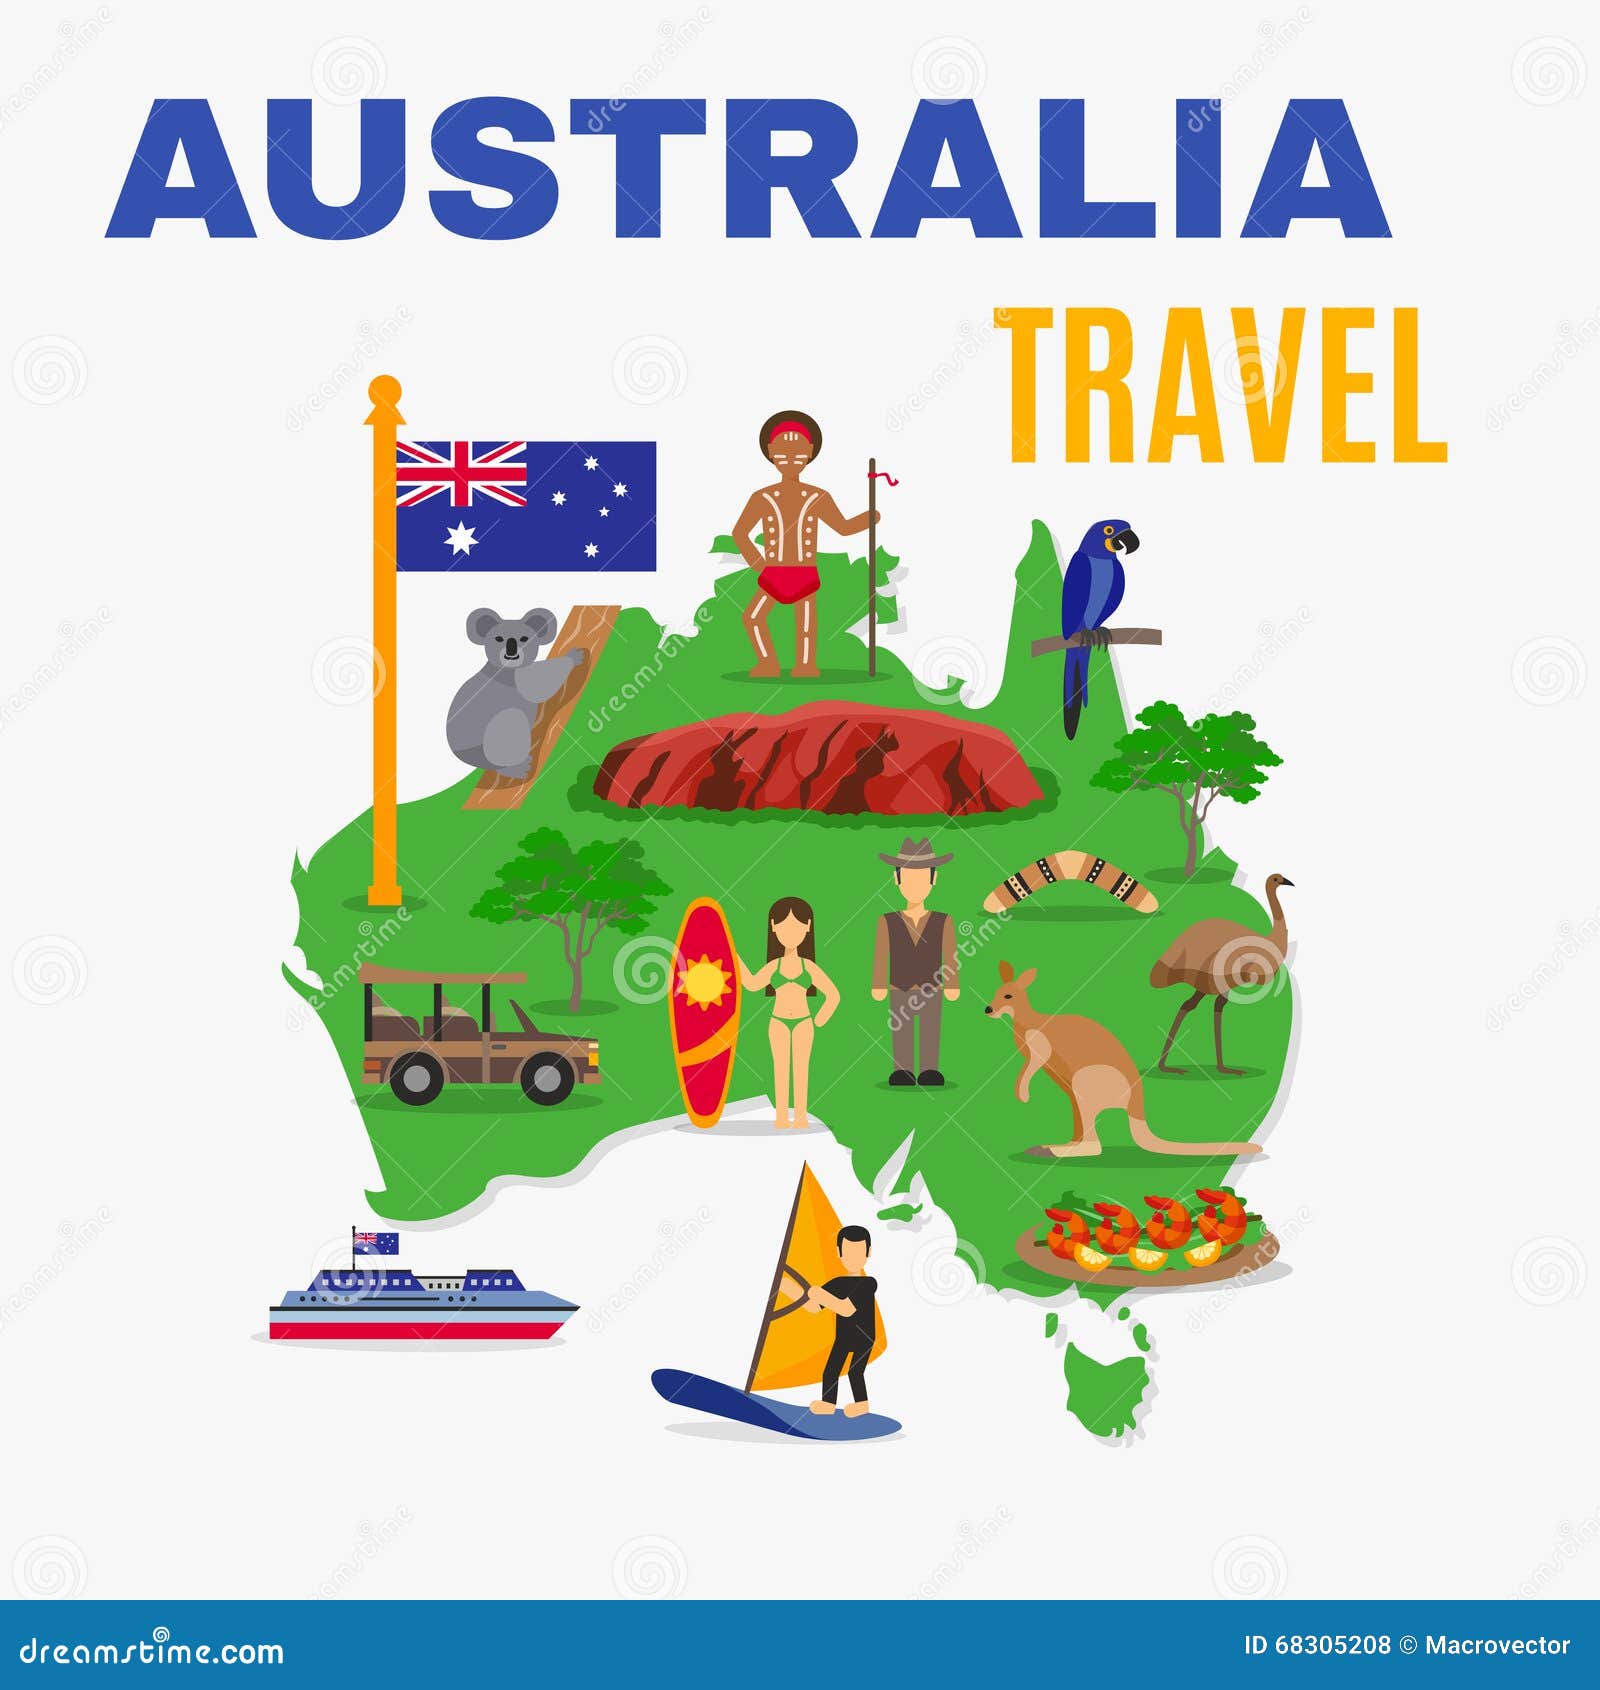 Australia Travel Map Poster Stock Vector - Illustration of ...